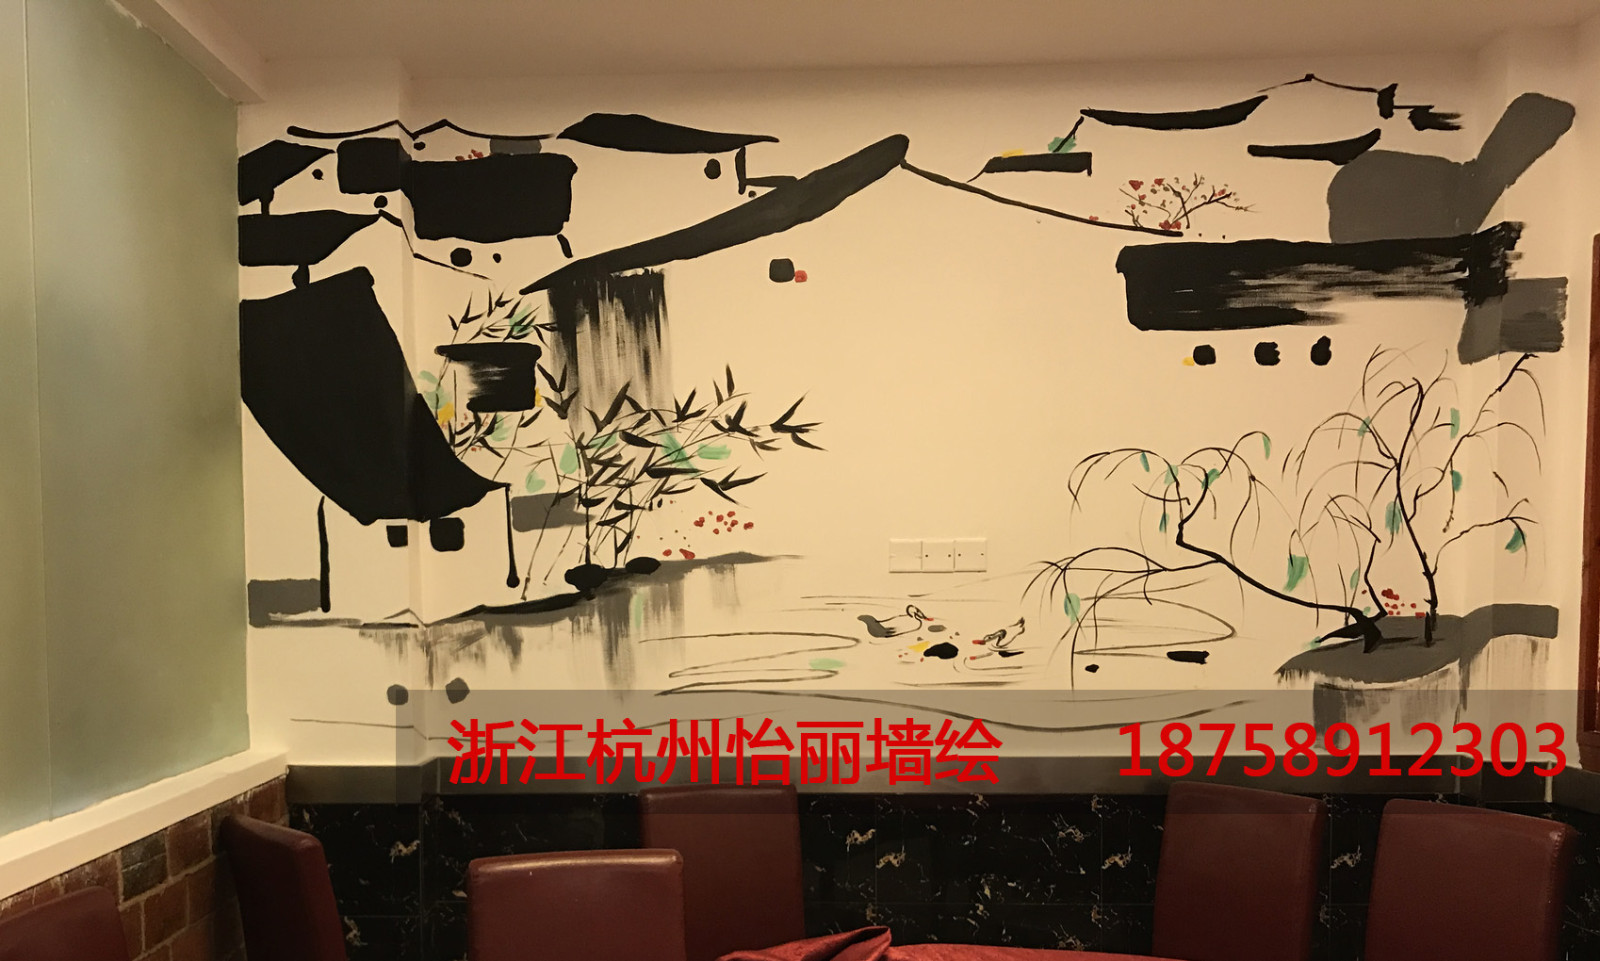 中式餐厅酒店手绘墙绘画.jpg